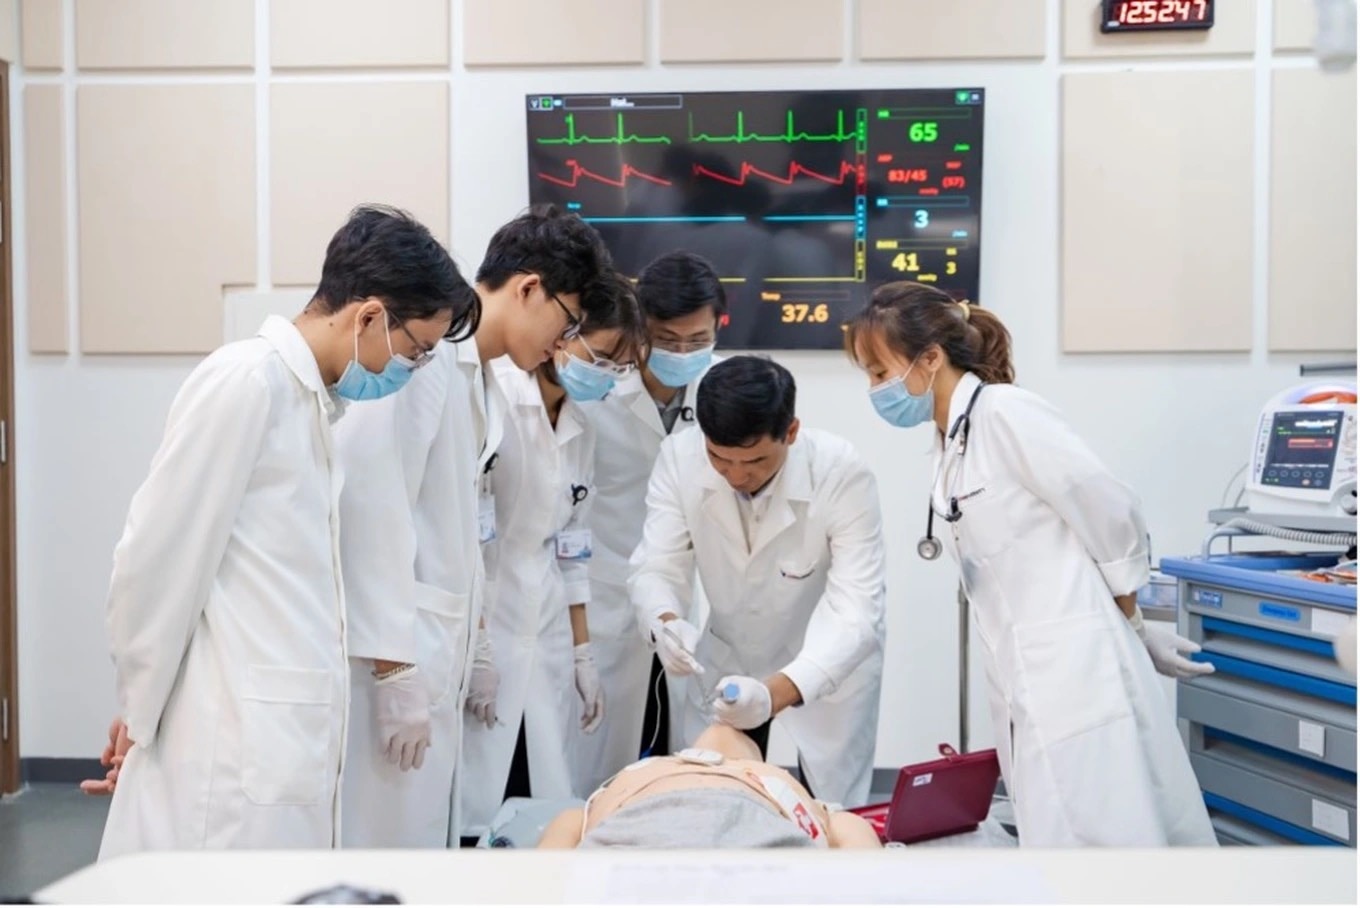 現在、ベトナムには、米国大学院医学教育プログラム国際認定評議会 (ACGME-I) から認定を取得した 3 つのプログラムを持つ VinUni があります。